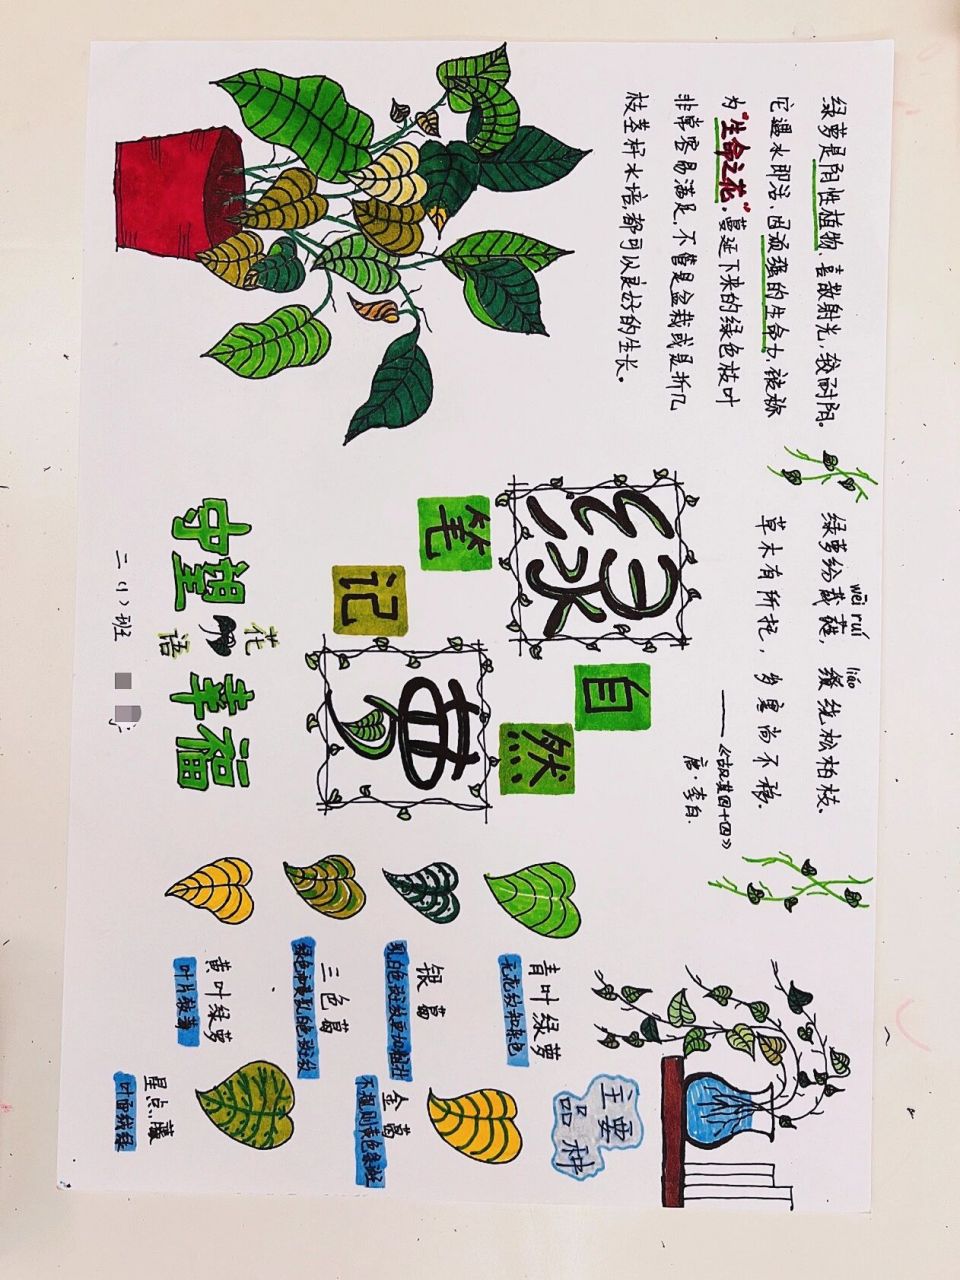 绿萝的植物记录卡图片